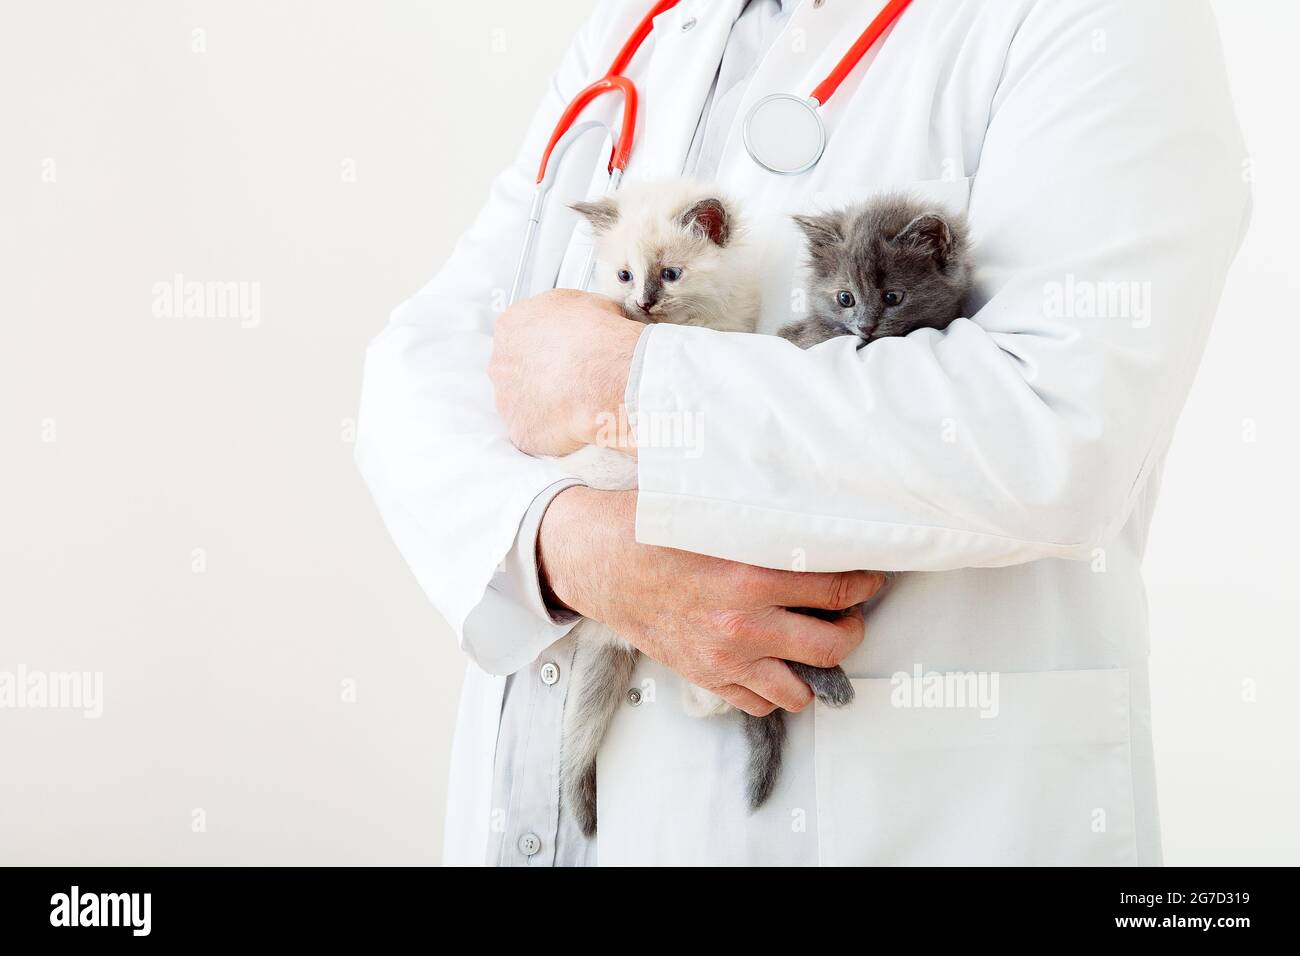 Chats dans les mains du médecin Vet. Médecin vétérinaire examinant les chatons. Chats de mammifères en clinique vétérinaire. Médecine vétérinaire pour animaux et chats. Animal chaton Banque D'Images